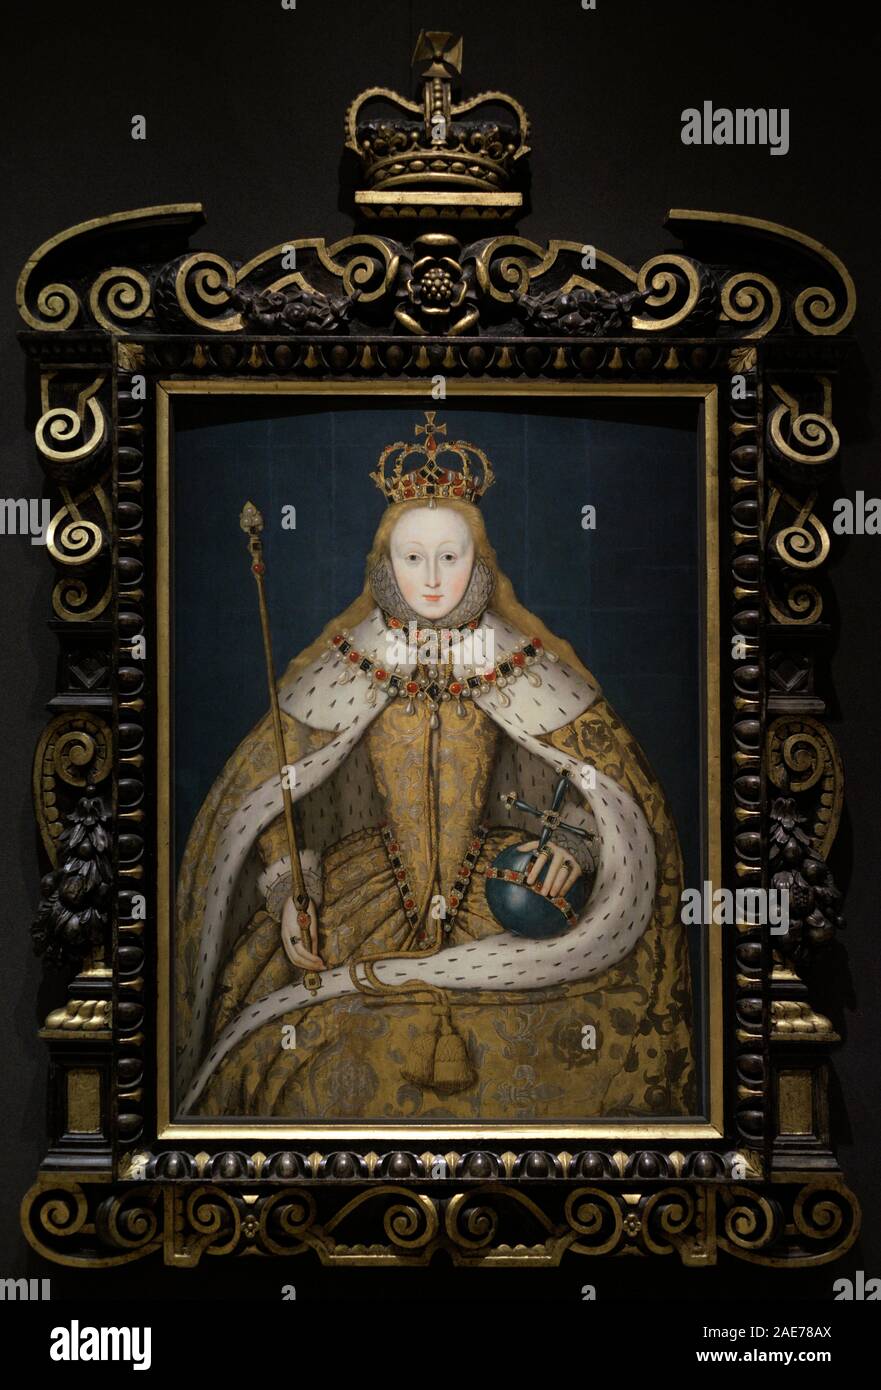 Isabel I de Inglaterra (Elizabeth I), la Reina Virgen (1533-1603). Reina de Inglaterra e Irlanda (1558-1603). Retrato de Isabel I en su coronación, 1600. Oleo sobre tabla, h.1600. Autor inglés anónimo. National Portrait Gallery, Londres, Inglaterra. Stock Photo